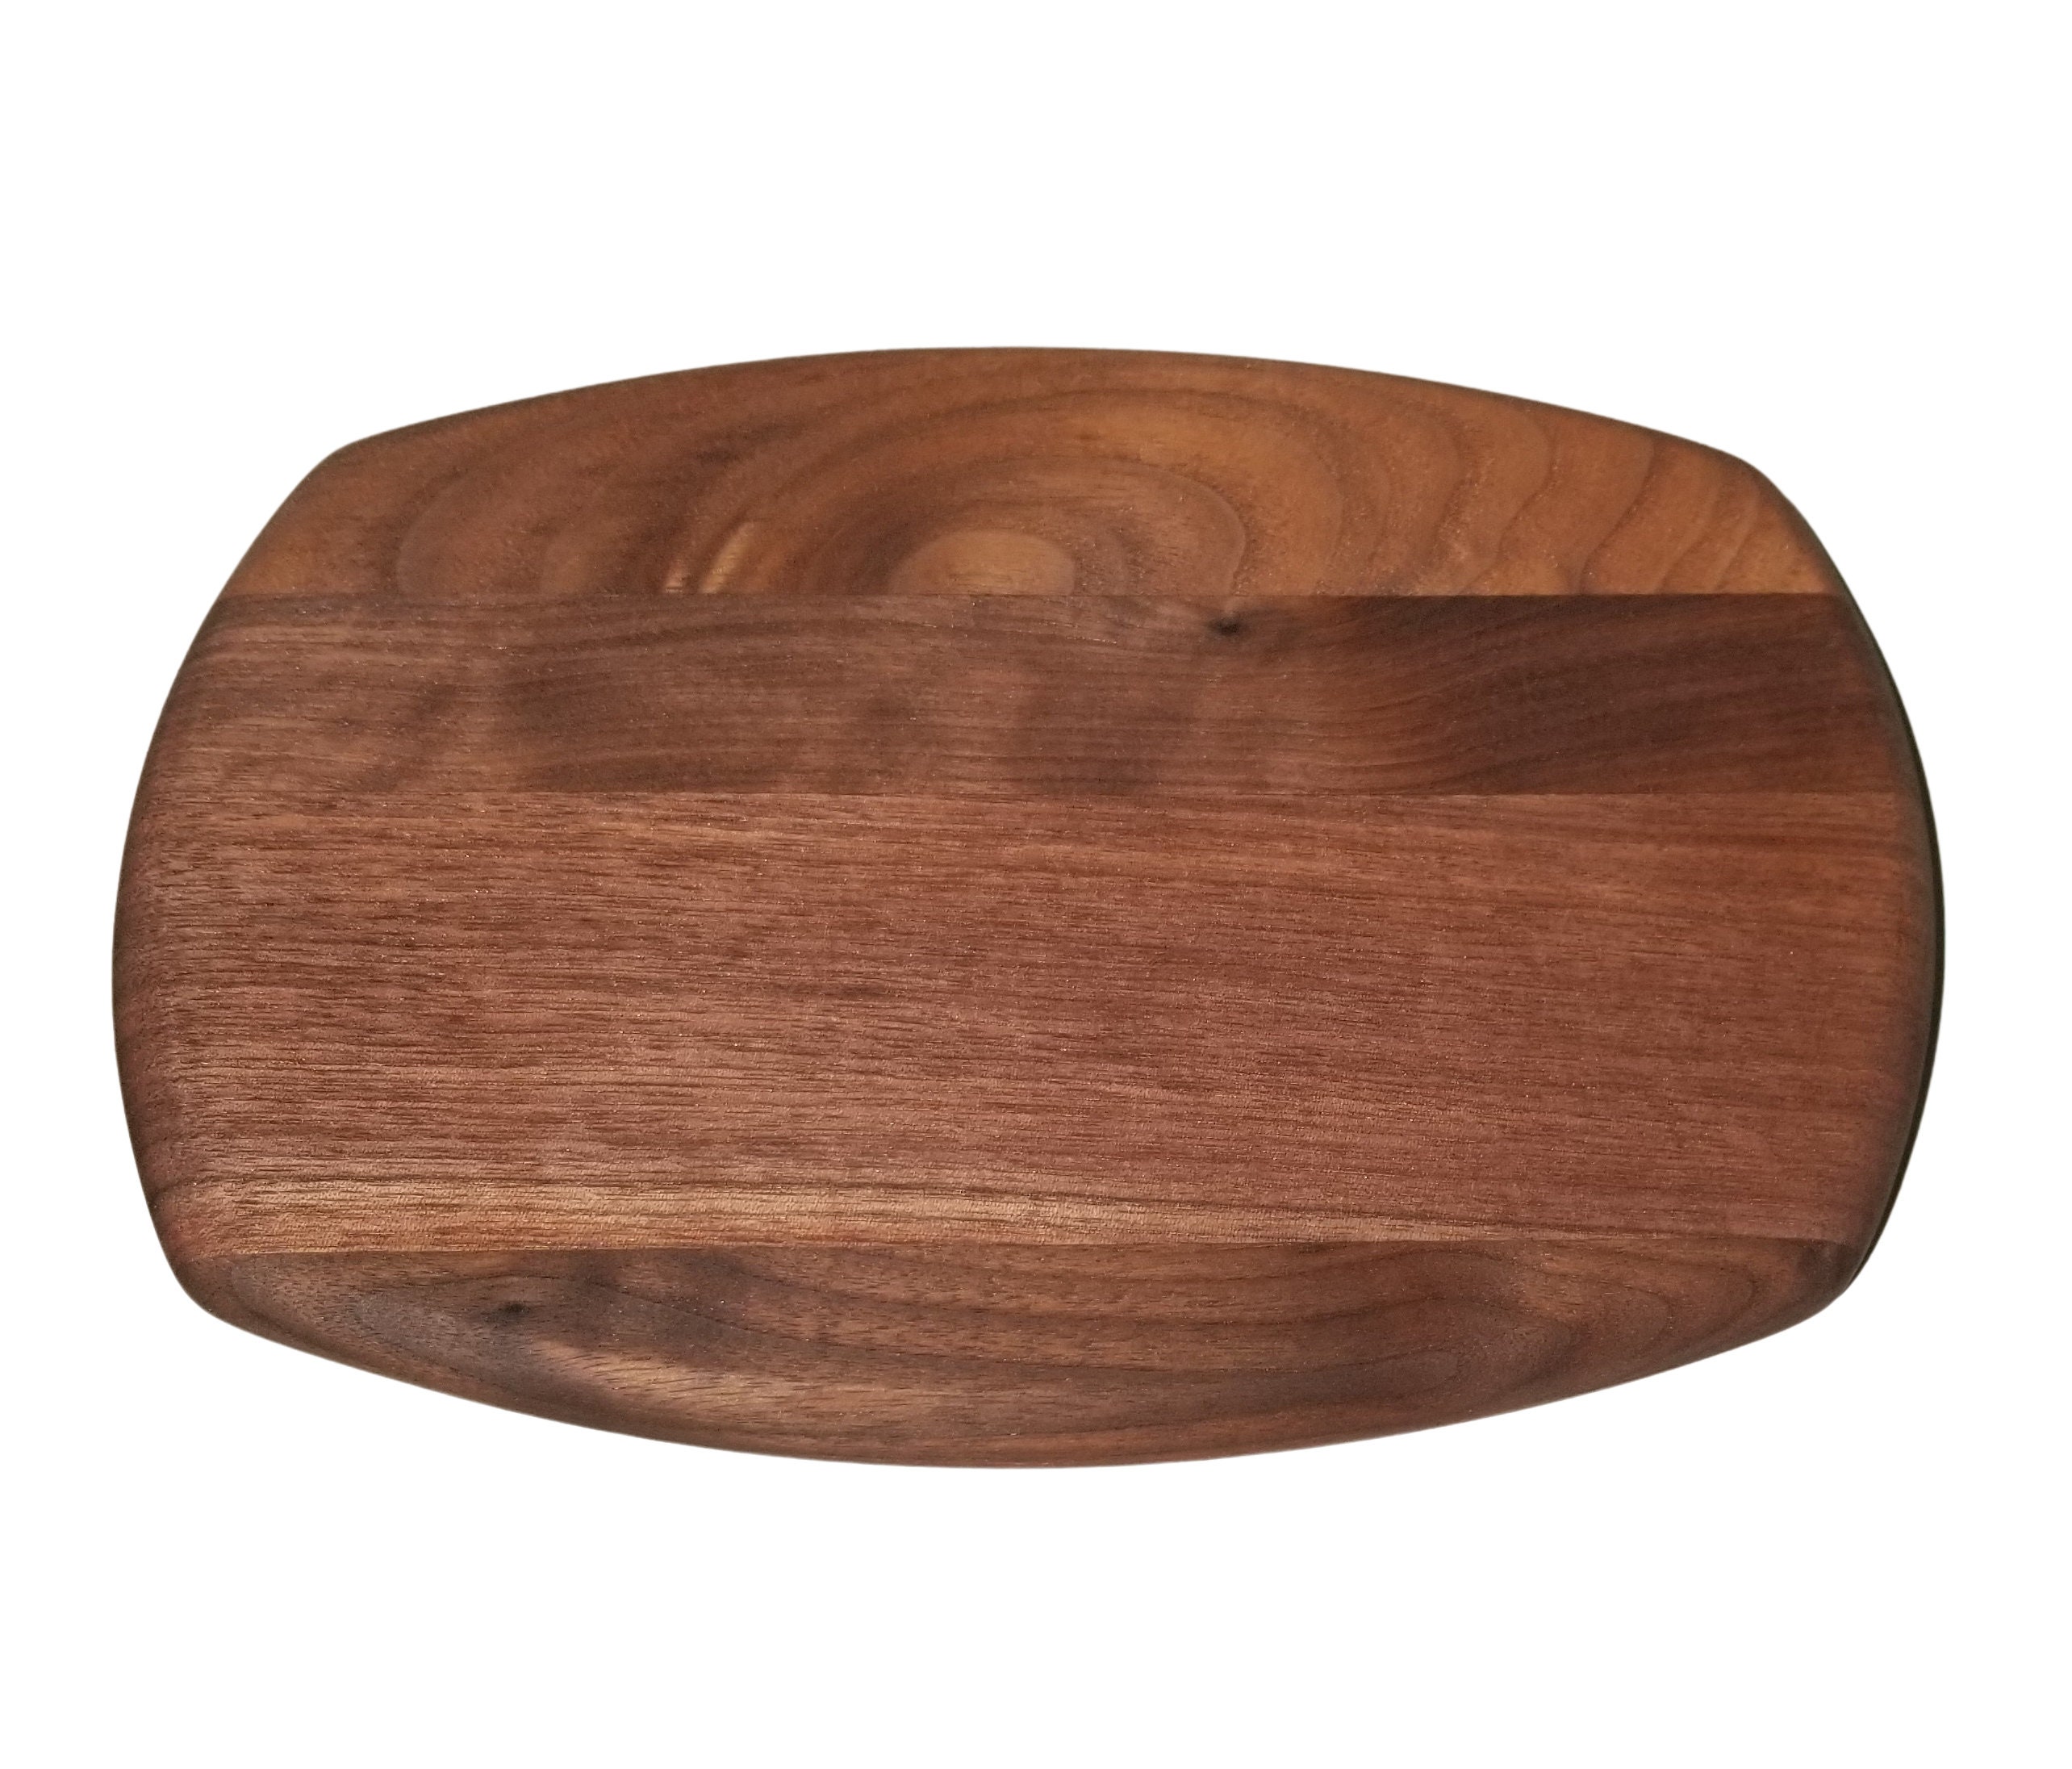 Rich Grained 3/4 Walnut Wood Cutting Board Set